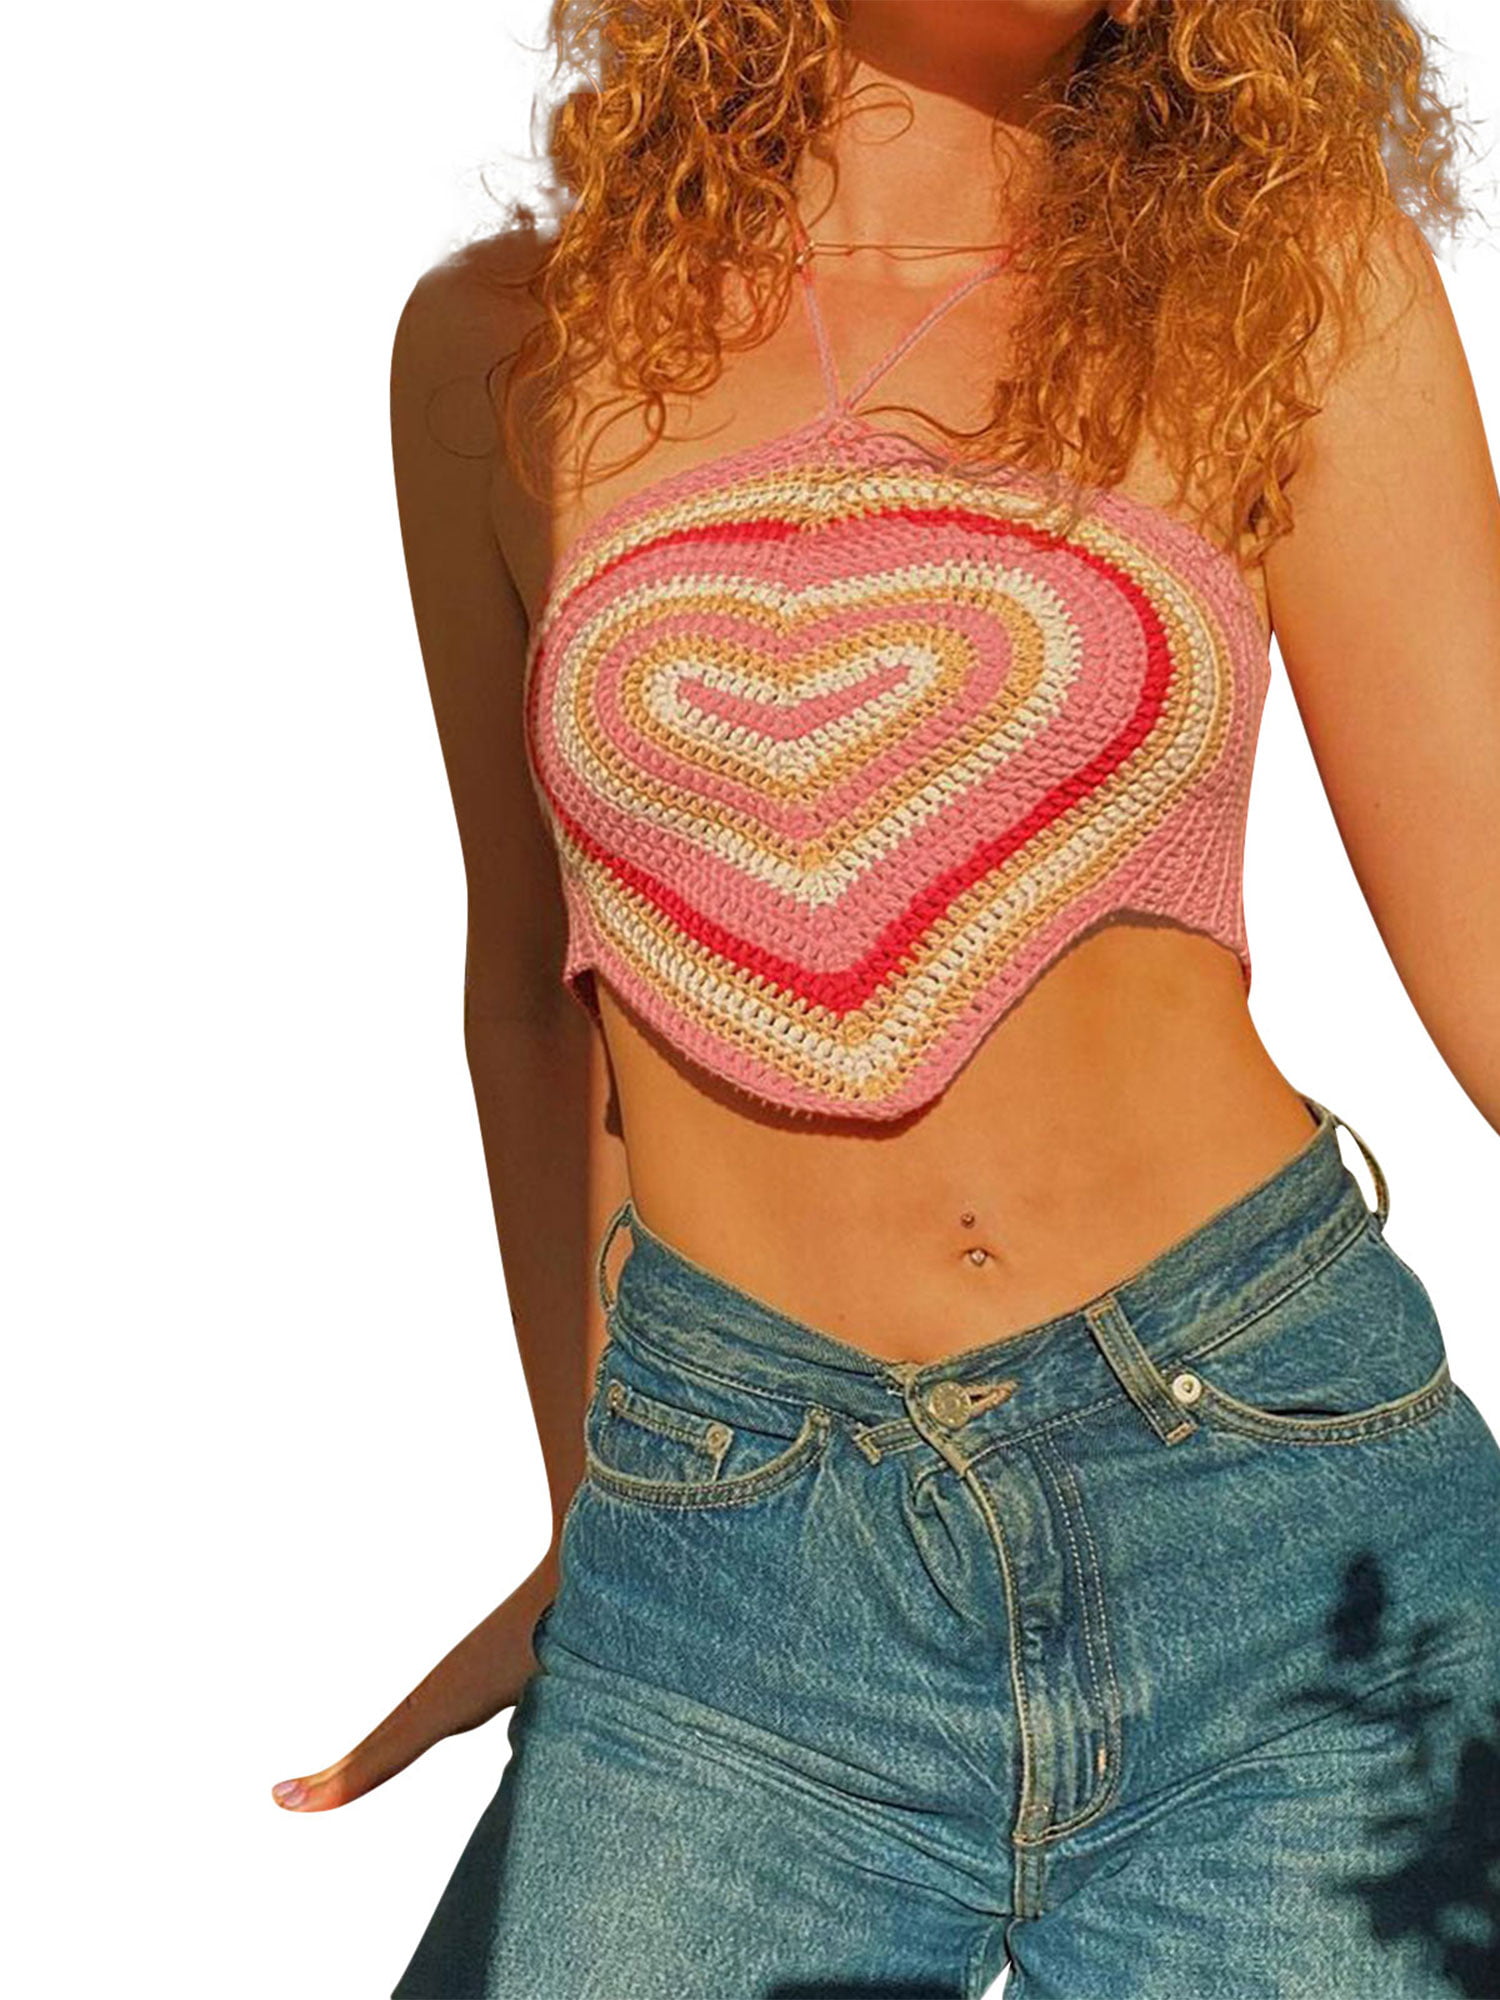 Yinyinxull Women's Halter Crop Tops Y2K Aesthetics Tank Tops Heart Print  Crochet Camisole Rose Red L